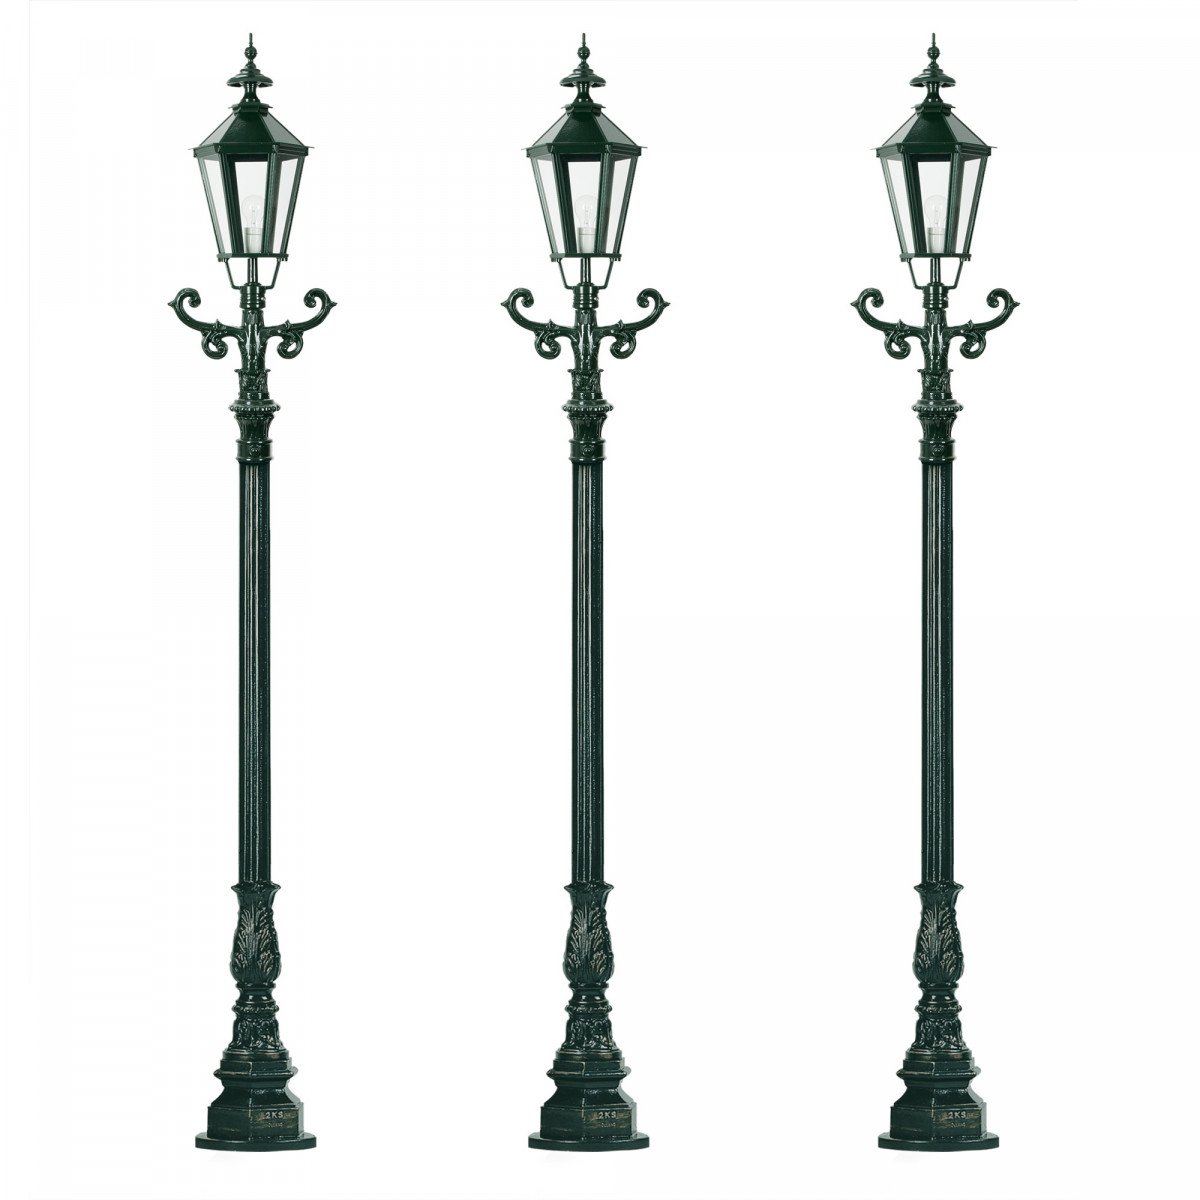 Set de 3 lampadaires de jardin Siegburg (3x0909) avec lanternes hexagonales